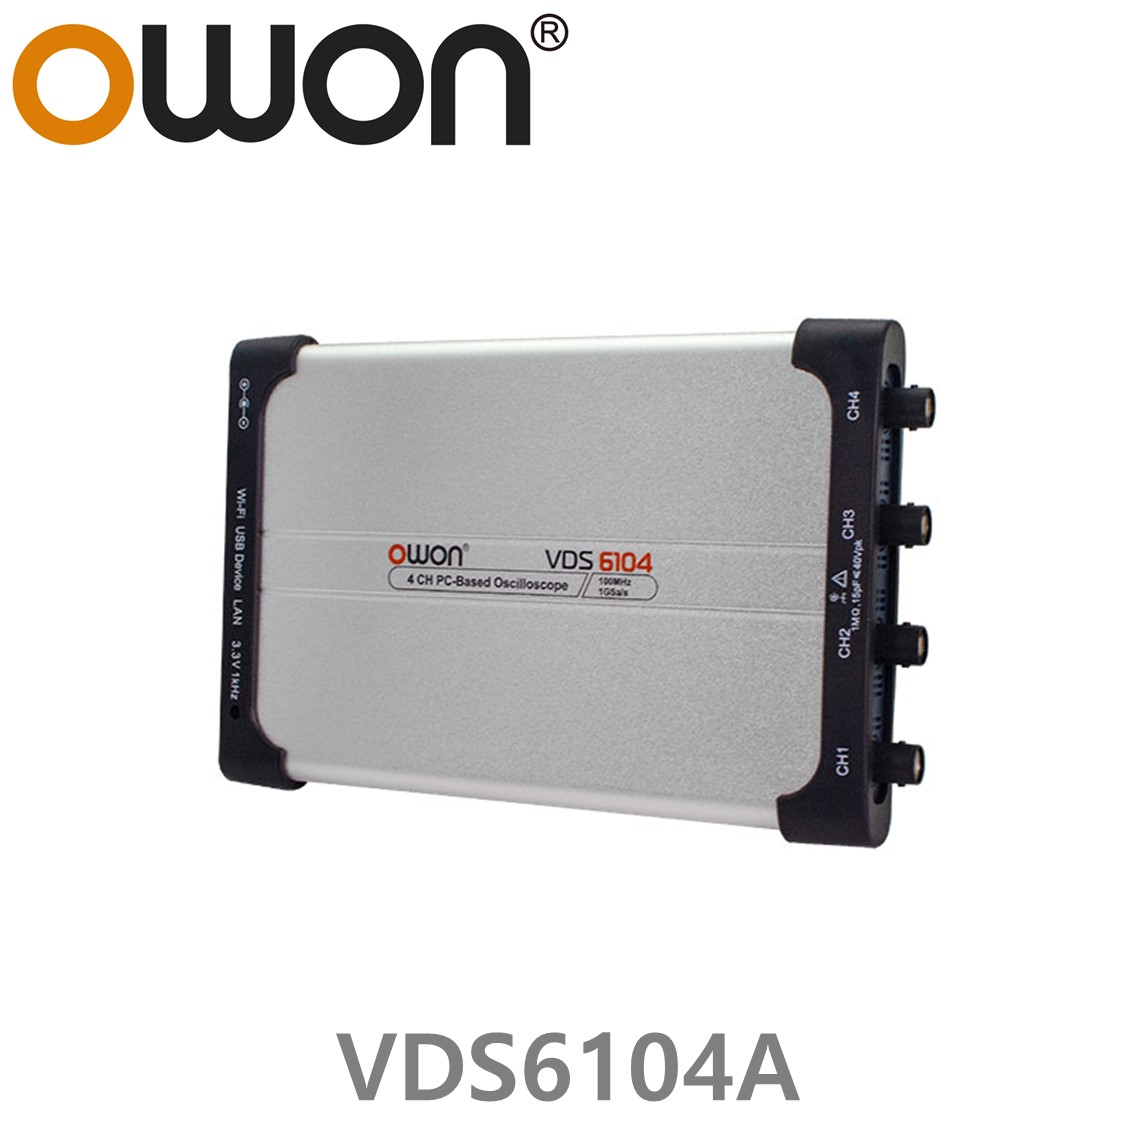 [ OWON ] VDS6104A PC 디지탈 오실로스코프 100MHz, 4CH, 1GS/s